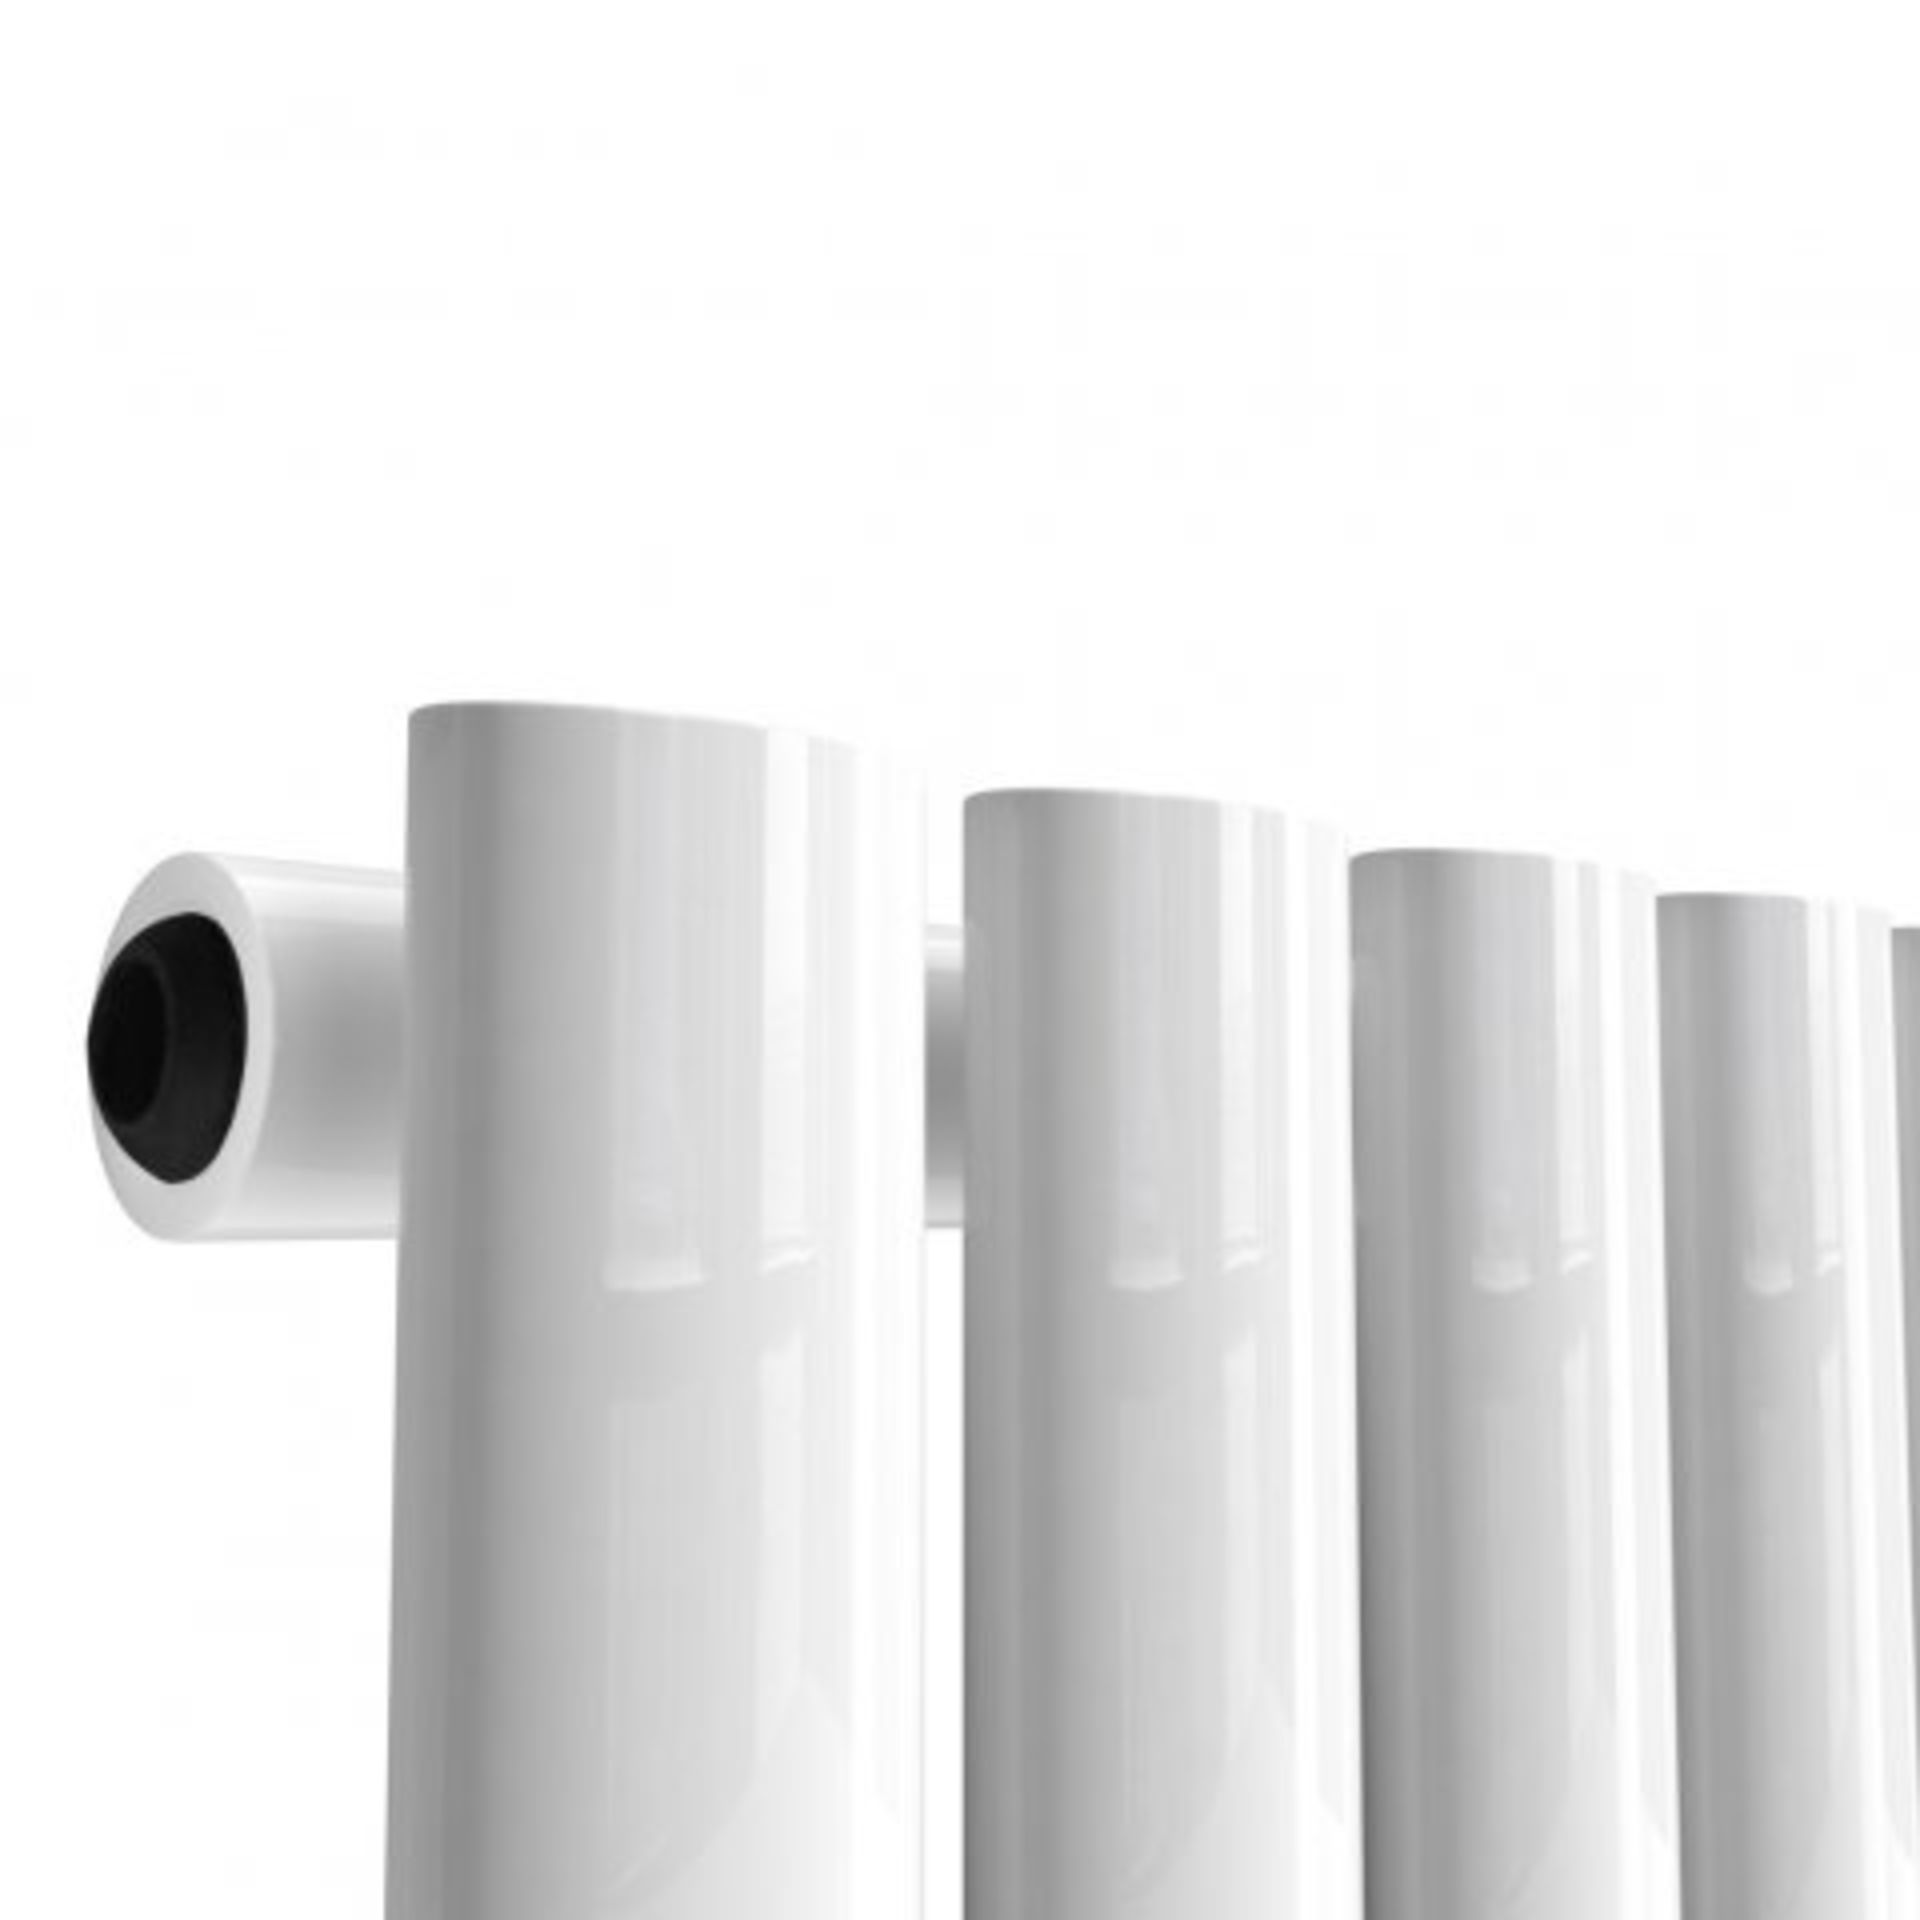 (I121) 1600x480mm Gloss White Single Oval Tube Vertical Radiator - Ember Premium. RRP £299.99. - Image 5 of 5